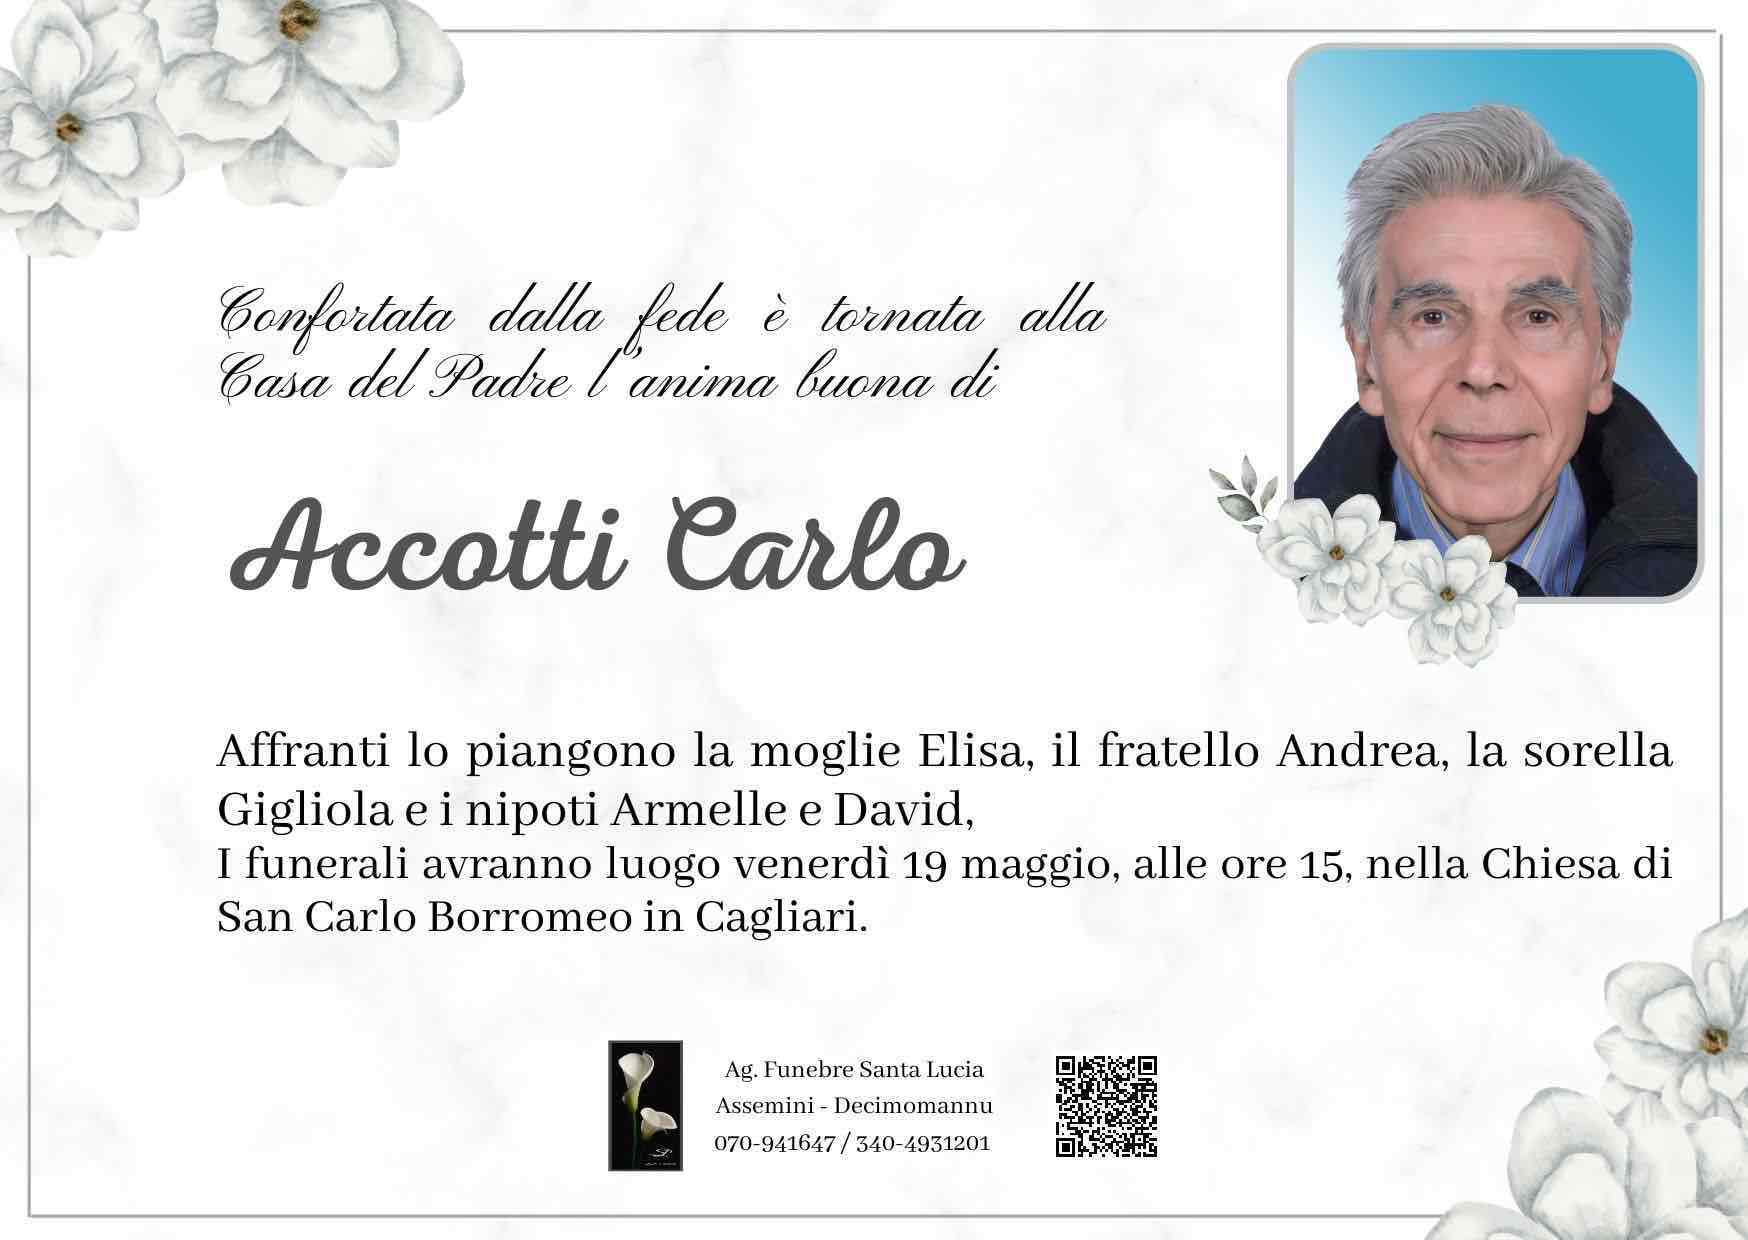 Carlo Accotti